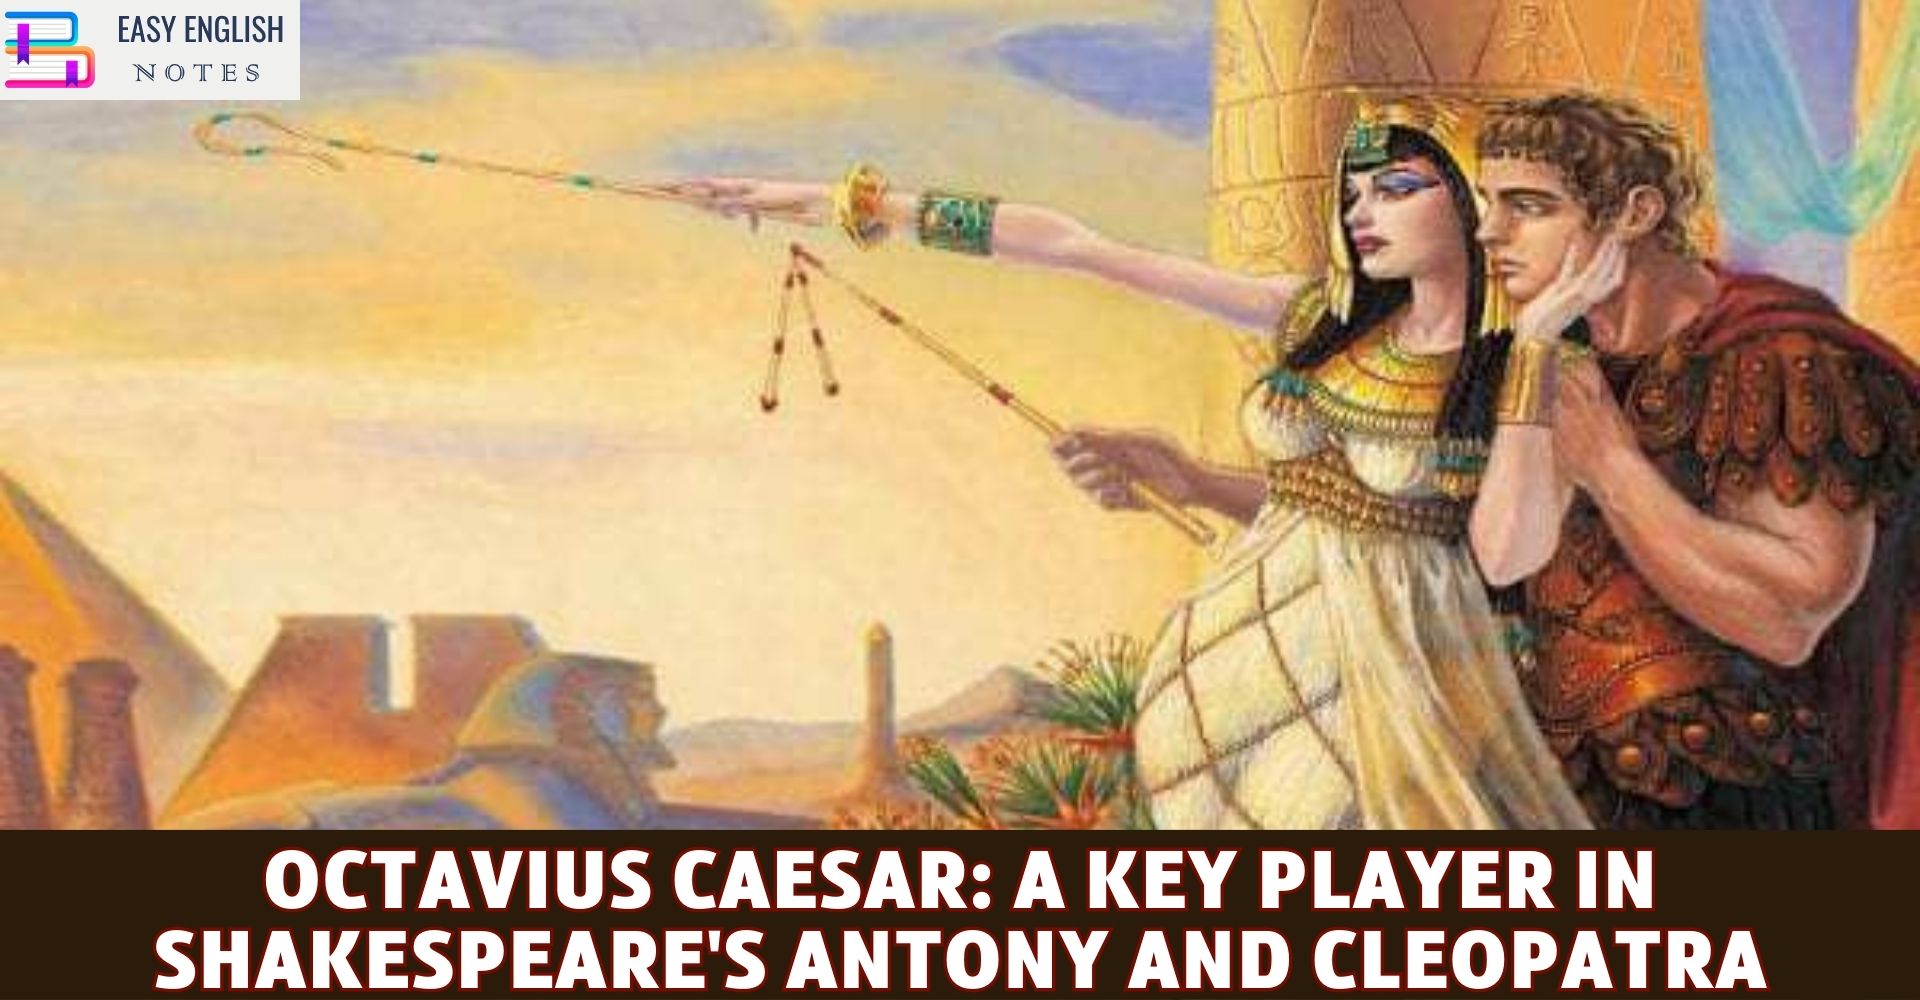 Octavius Caesar: A Key Player in Shakespeare's Antony and Cleopatra